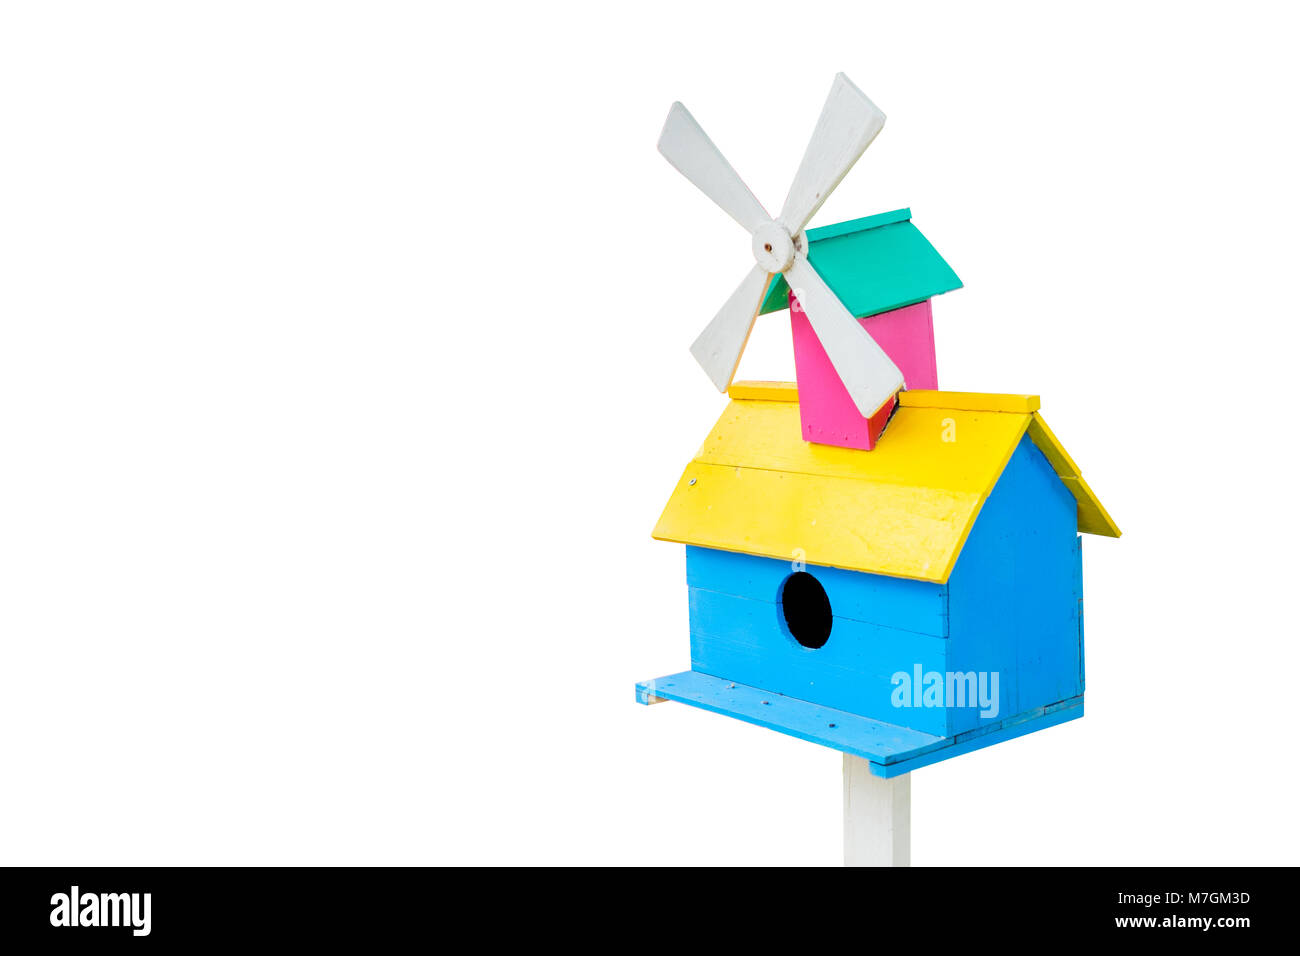 Bunter Vogel Haus isoliert. Blue House, gelben Dach und weißen wind turbine. Für Außen- und Gartendekoration. Stockfoto